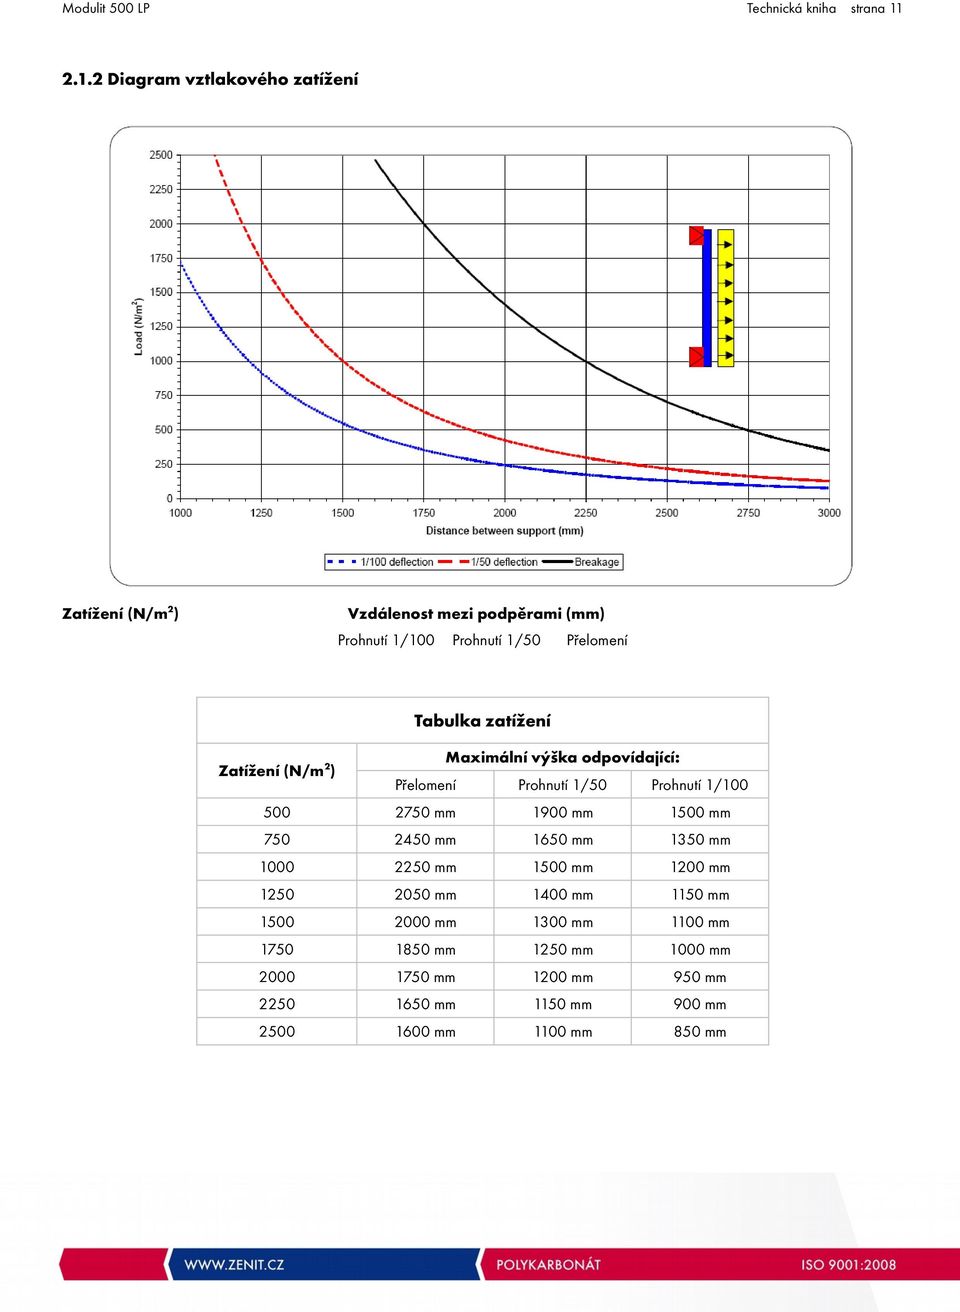 zatížení Zatížení (N/m2) Maximální výška odpovídající: Přelomení Prohnutí 1/50 Prohnutí 1/100 500 2750 mm 1900 mm 1500 mm 750